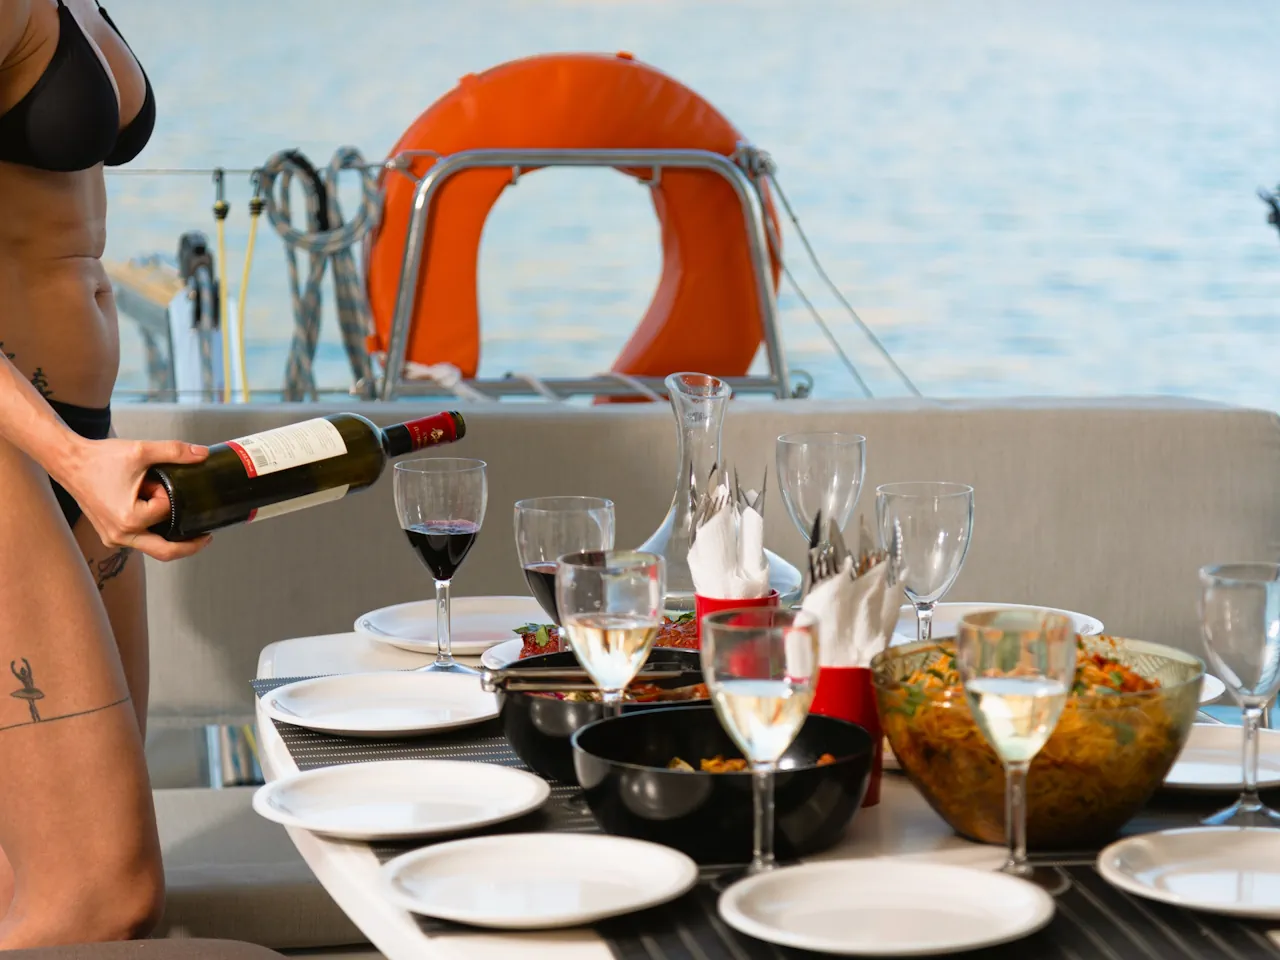 Agios Nikolaos: Luxury Cruise in Mirabello Bay